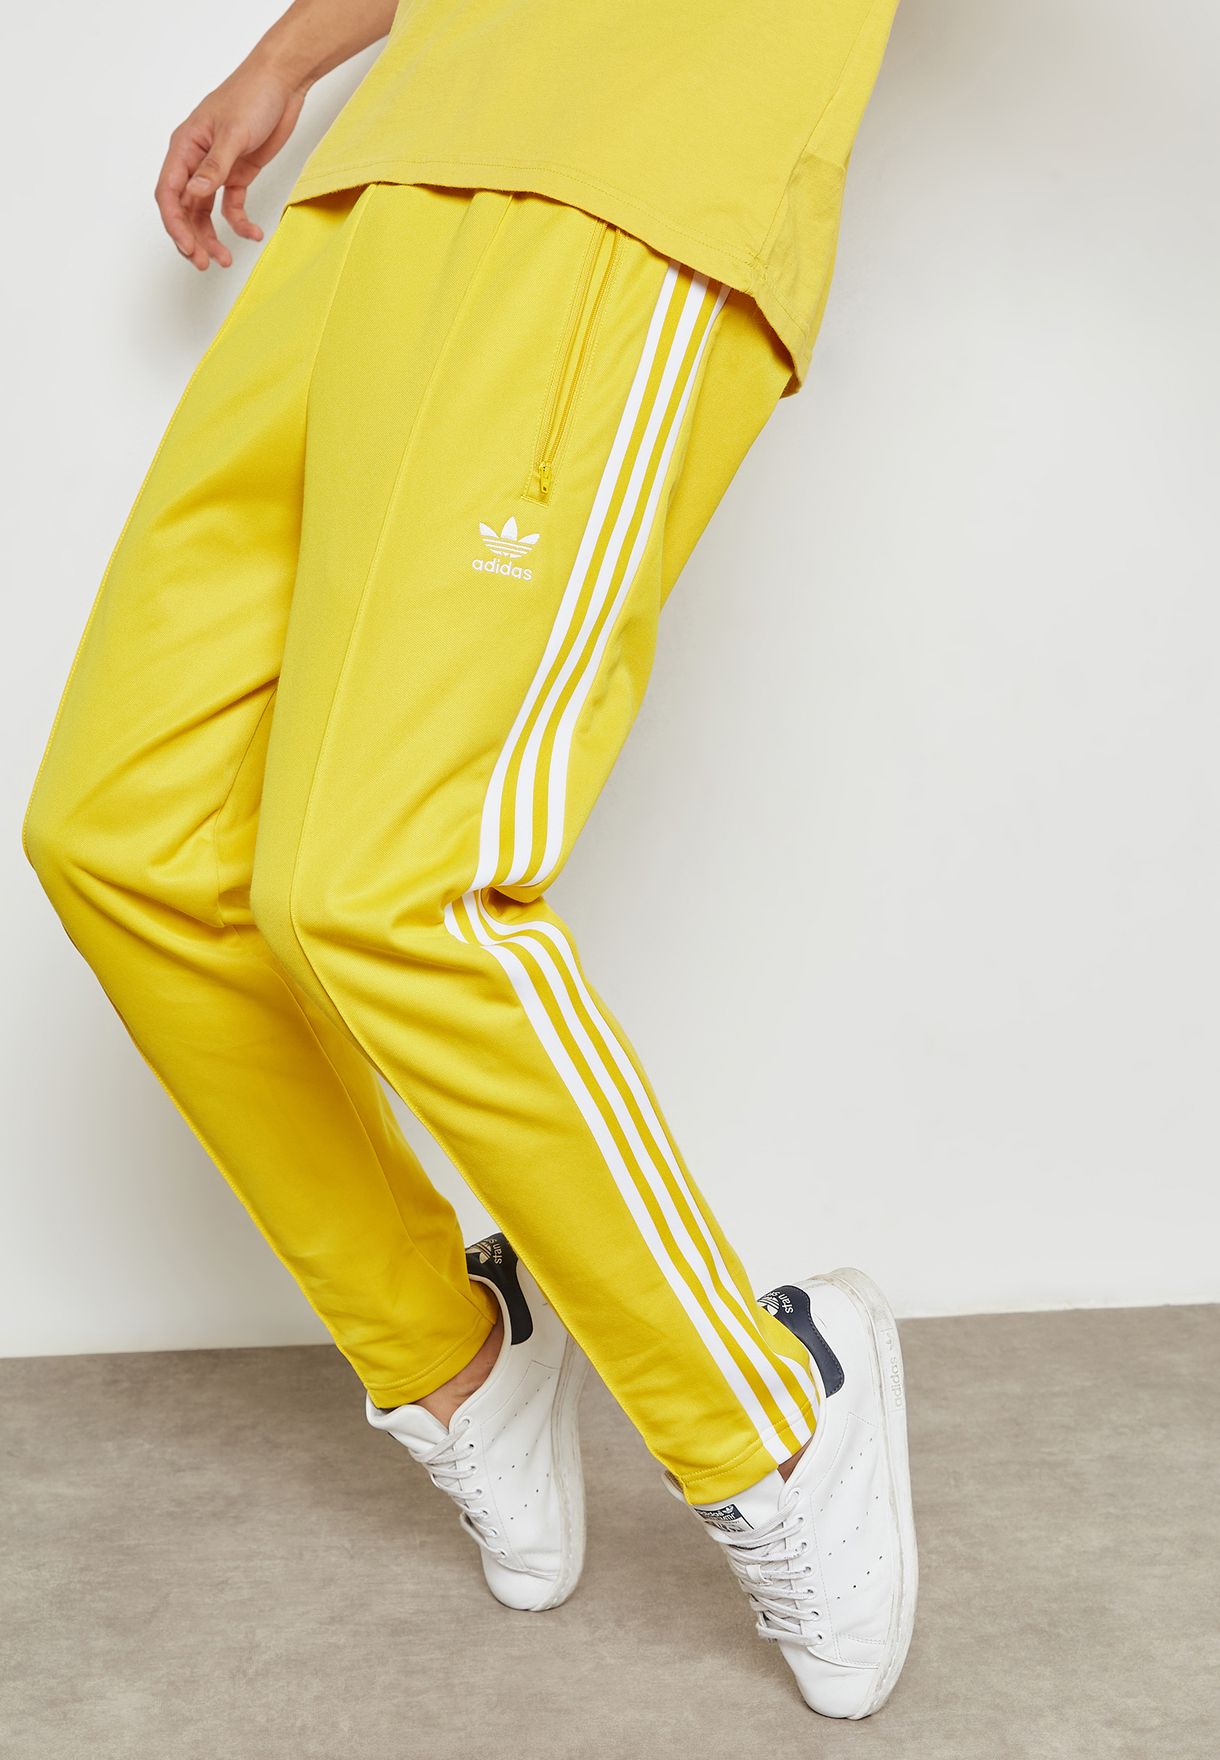 yellow adidas jogging pants